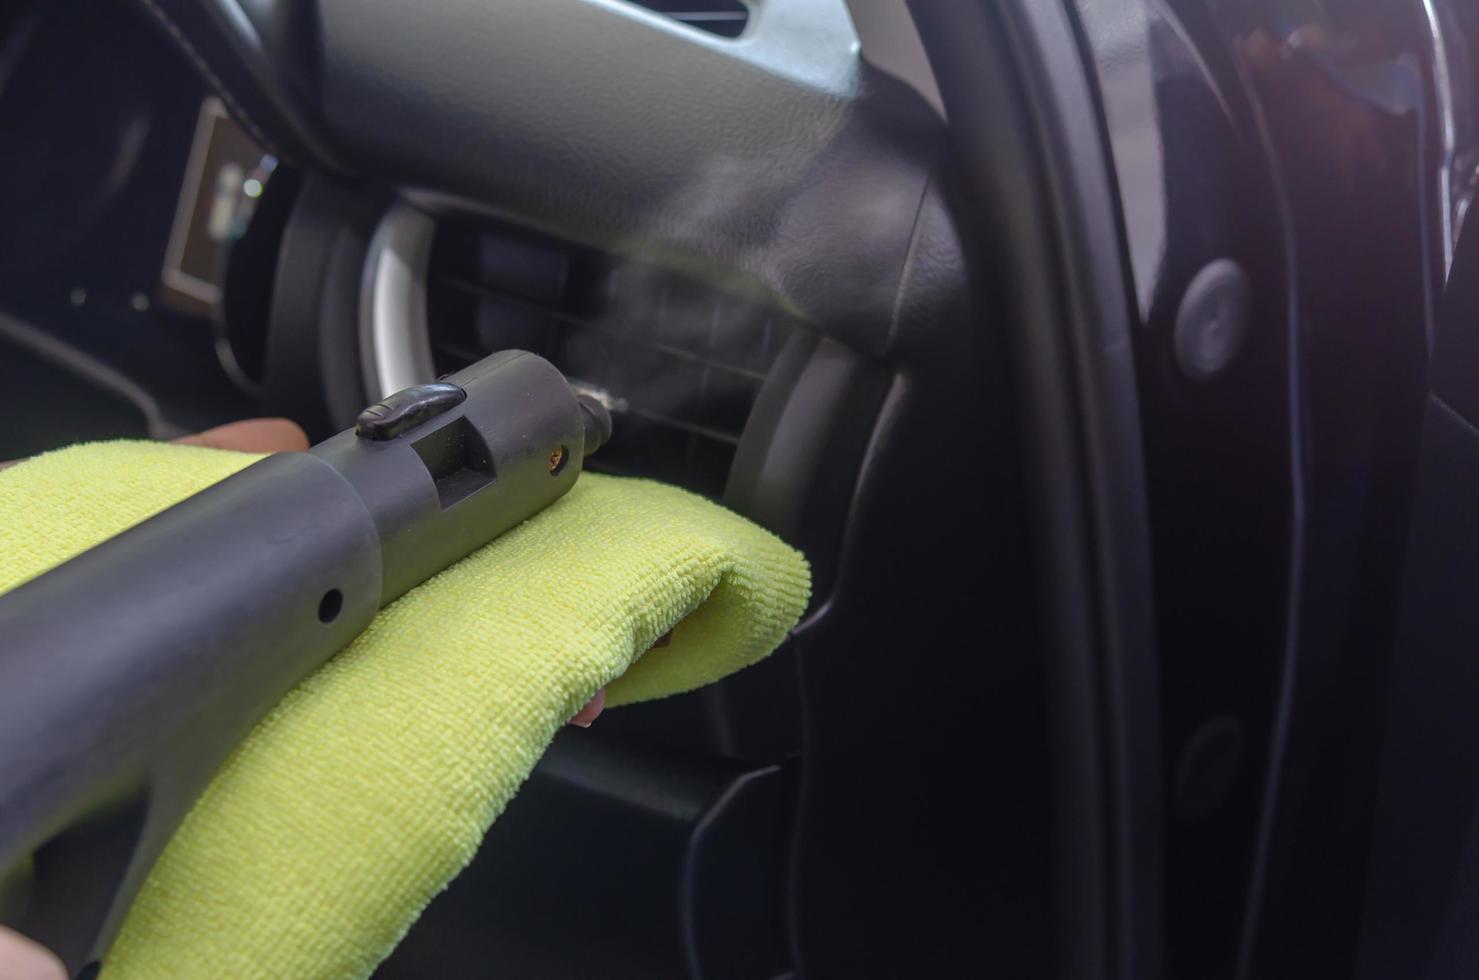 limpiar el aire acondicionado de un coche foto